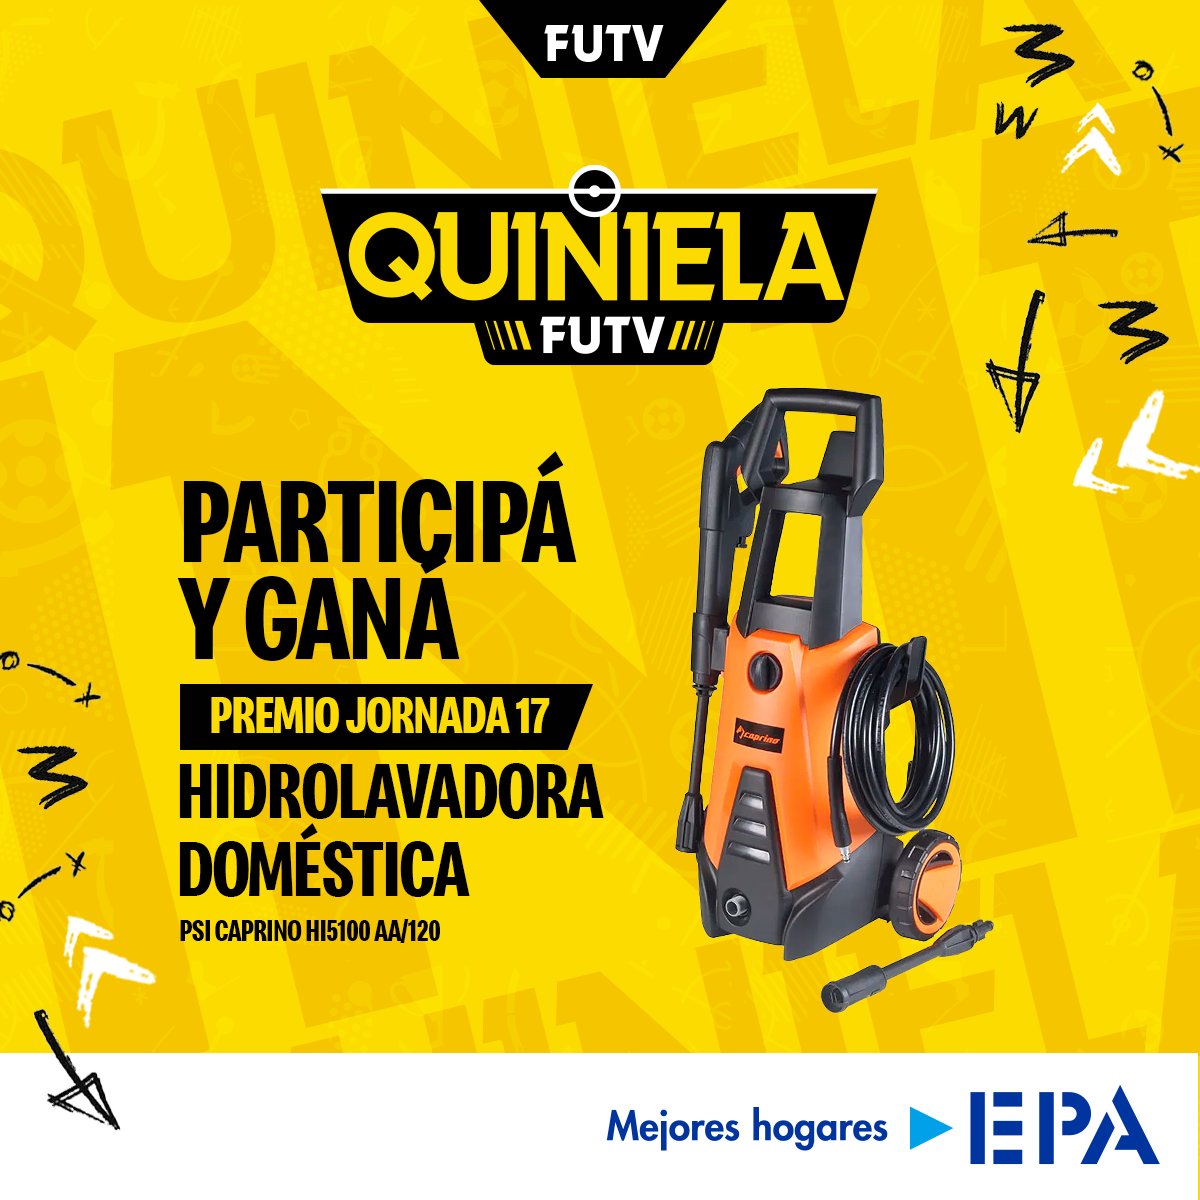 Esta hidrolavadora doméstica cortesía de EPA es el premio que se llevará el ganador de la jornada 17 de la #QuinielaFUTV.

🔗 quiniela.futvcr.com